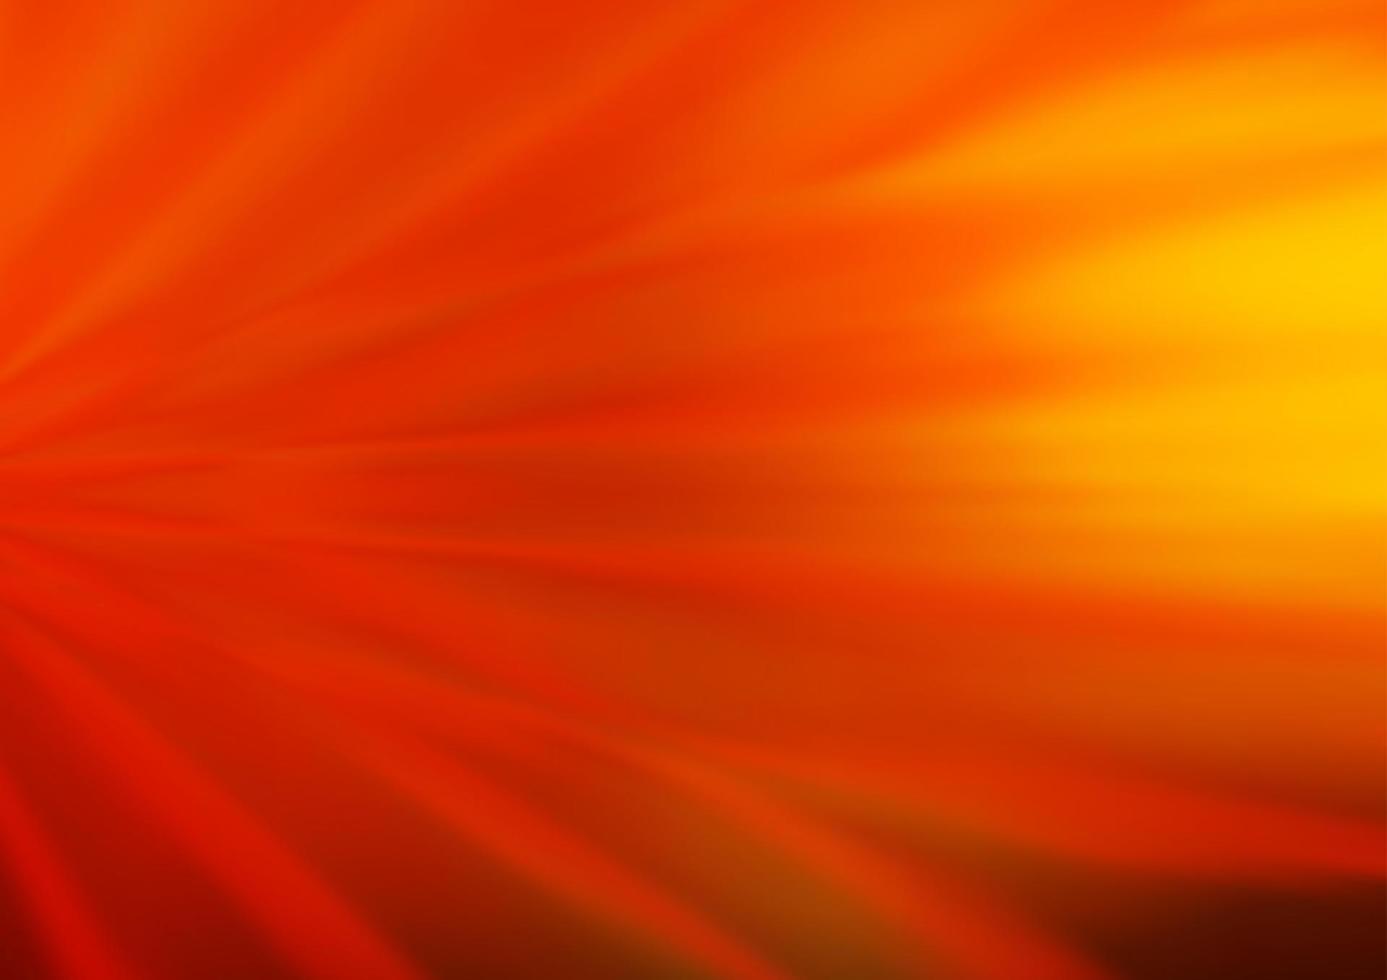 ljusgul, orange vektor suddig bakgrund.